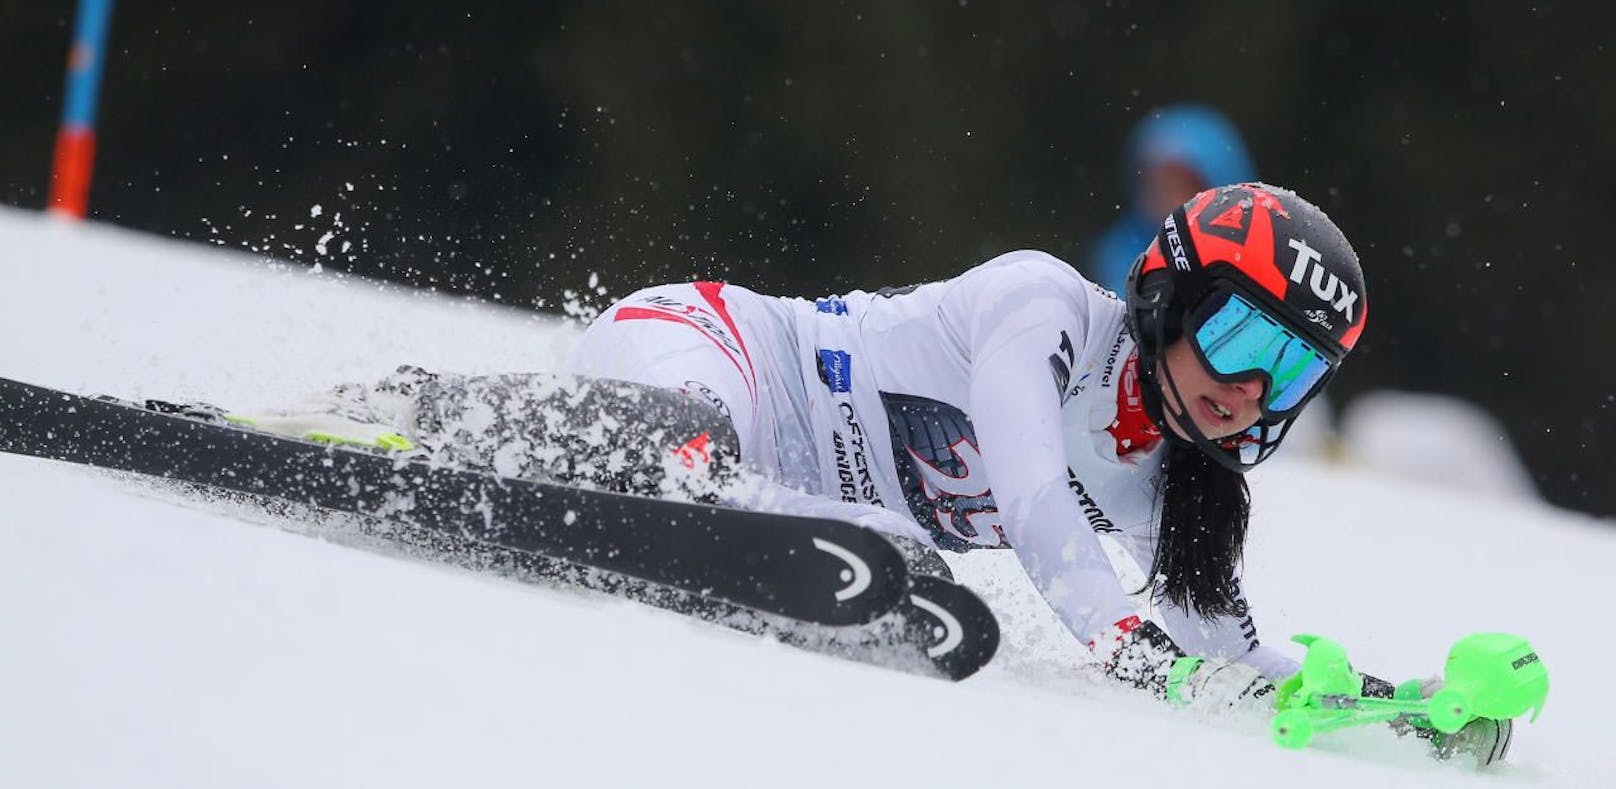 Schock für ÖSV! Ski-Star mit schwerer Verletzung